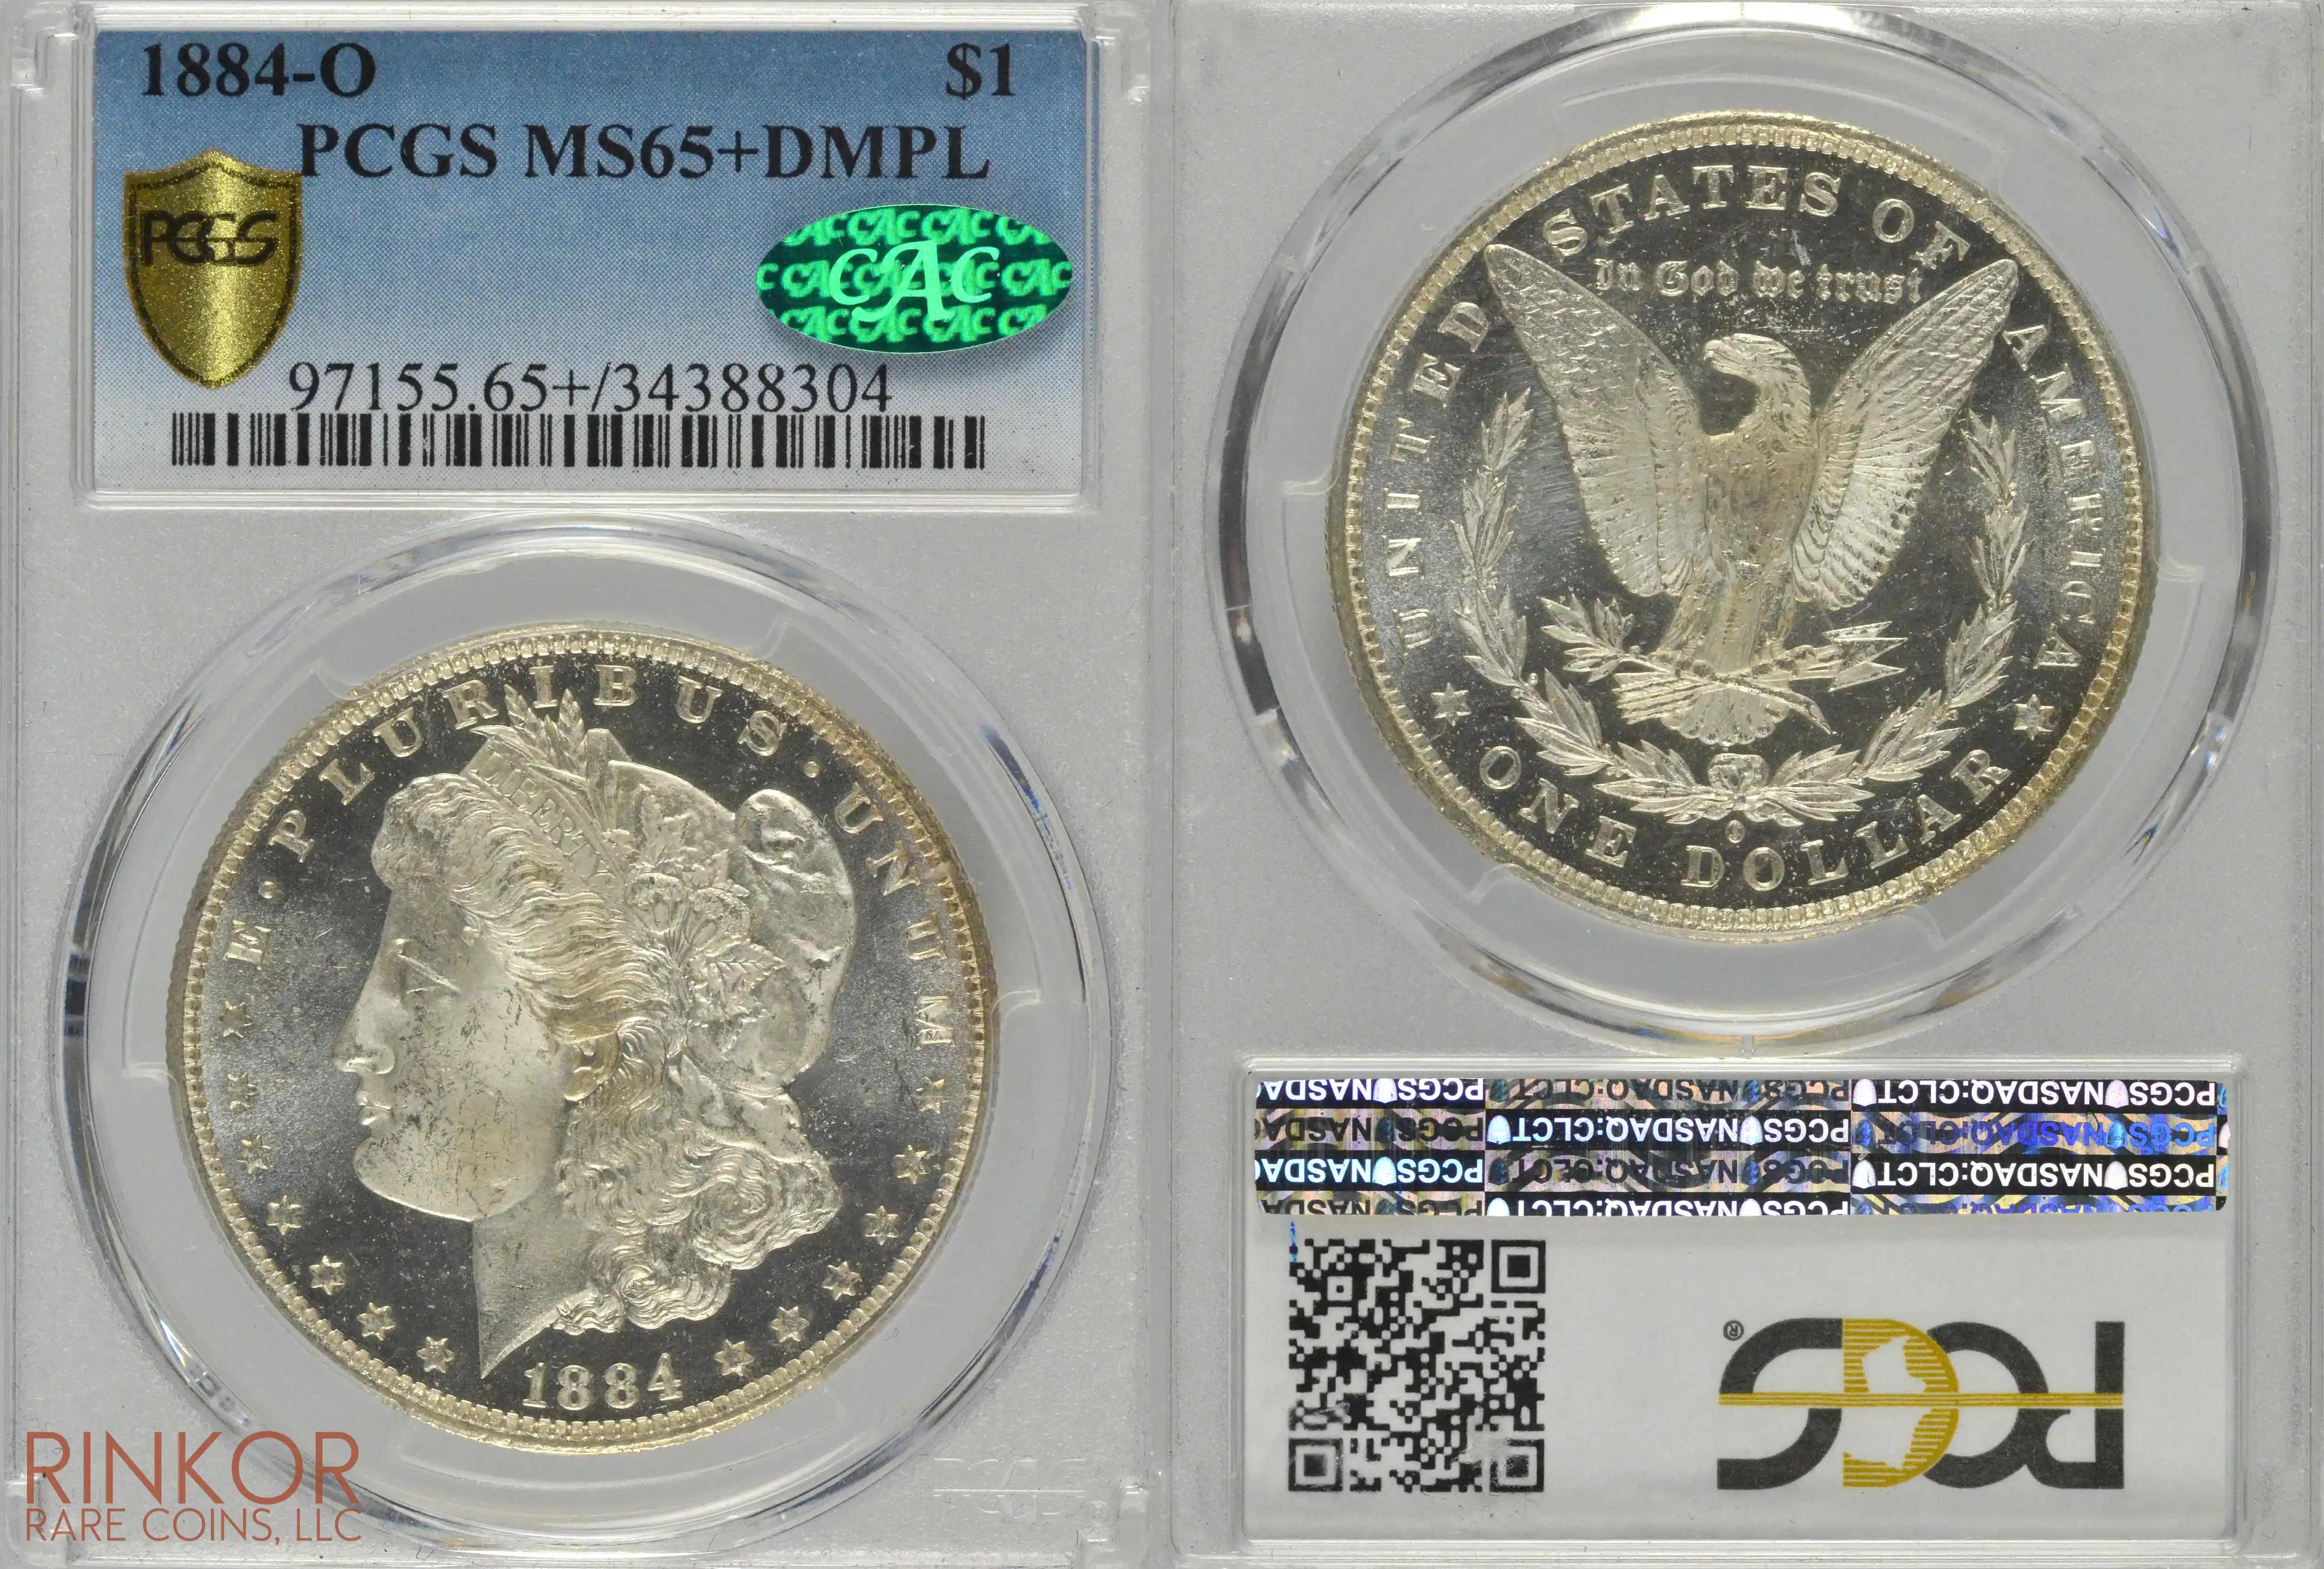 1884-O $1 PCGS MS 65+ DMPL CAC